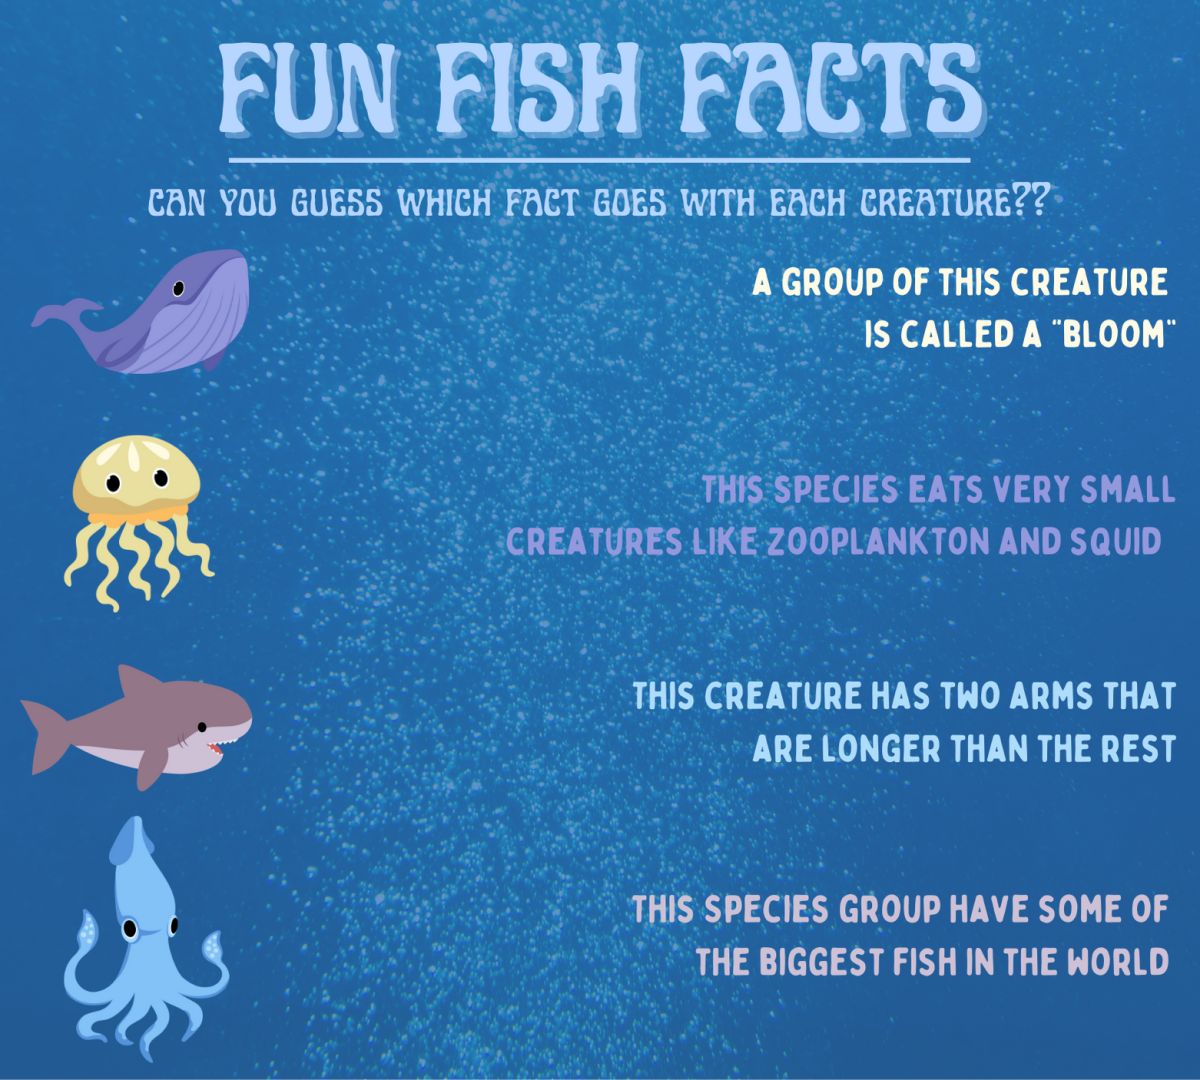 Fun+fish+facts